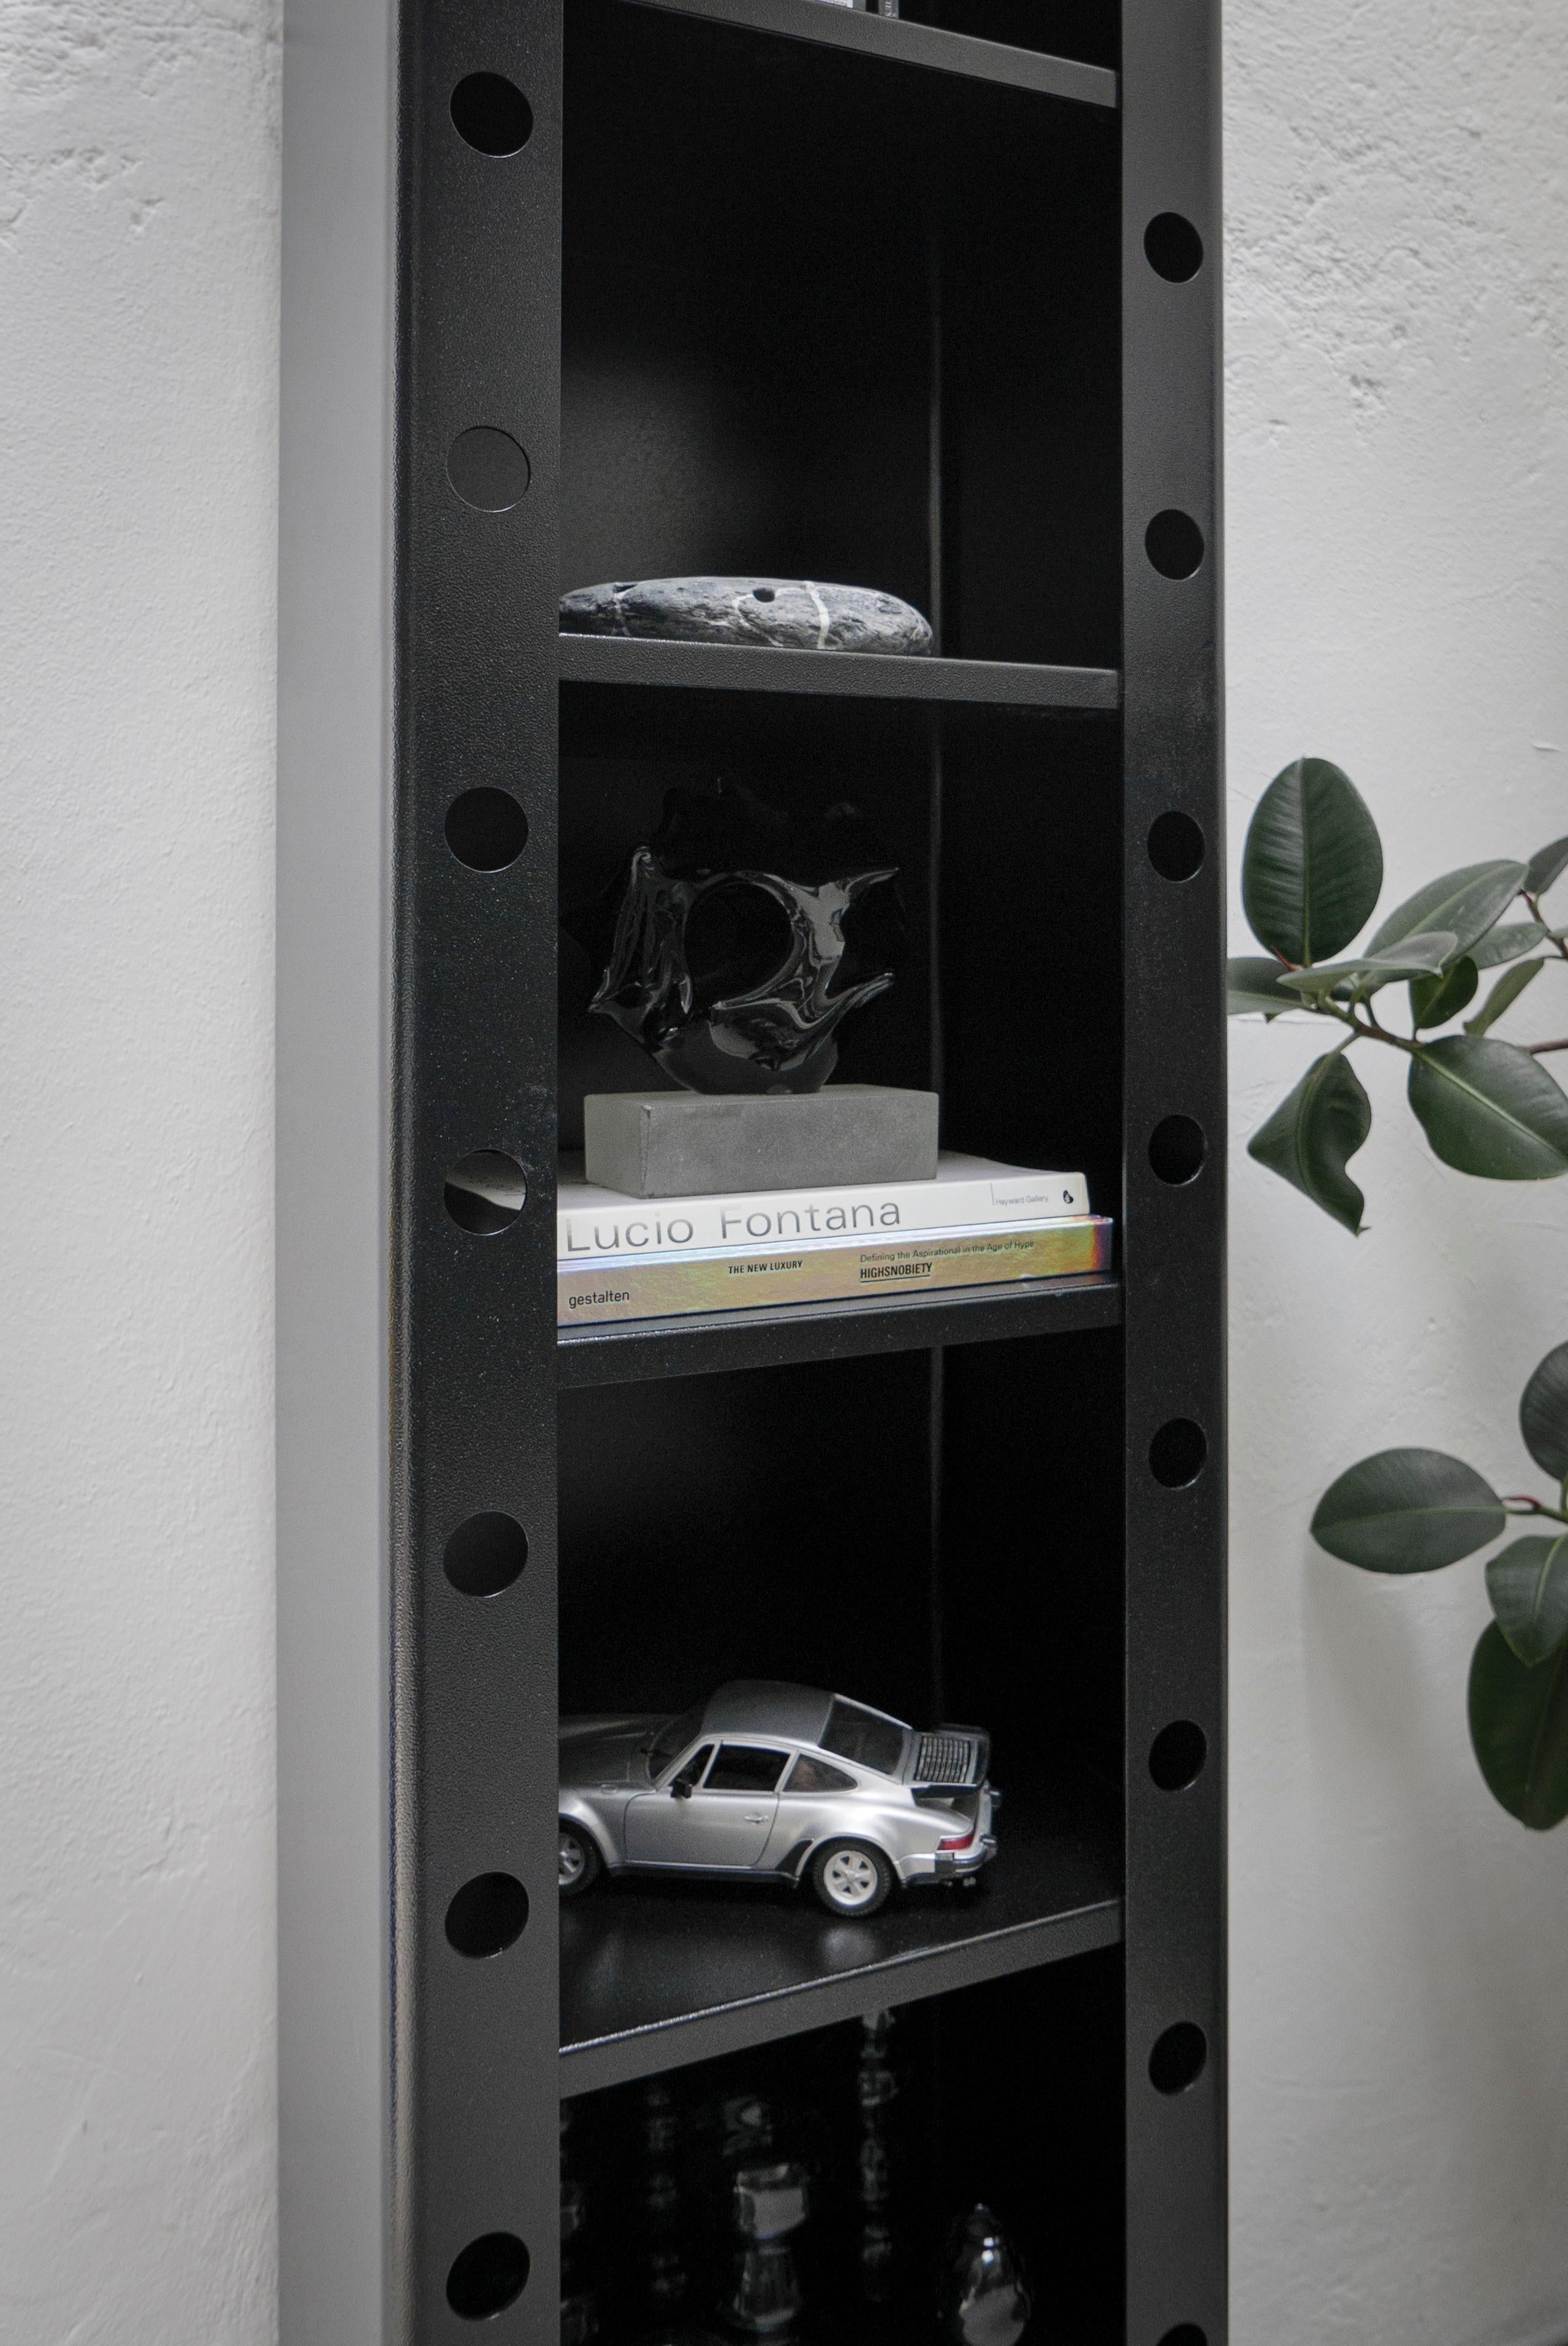 Italian Spinzi Meccano Bookcase, Contemporary 21st Century Industrial Metal Furniture For Sale